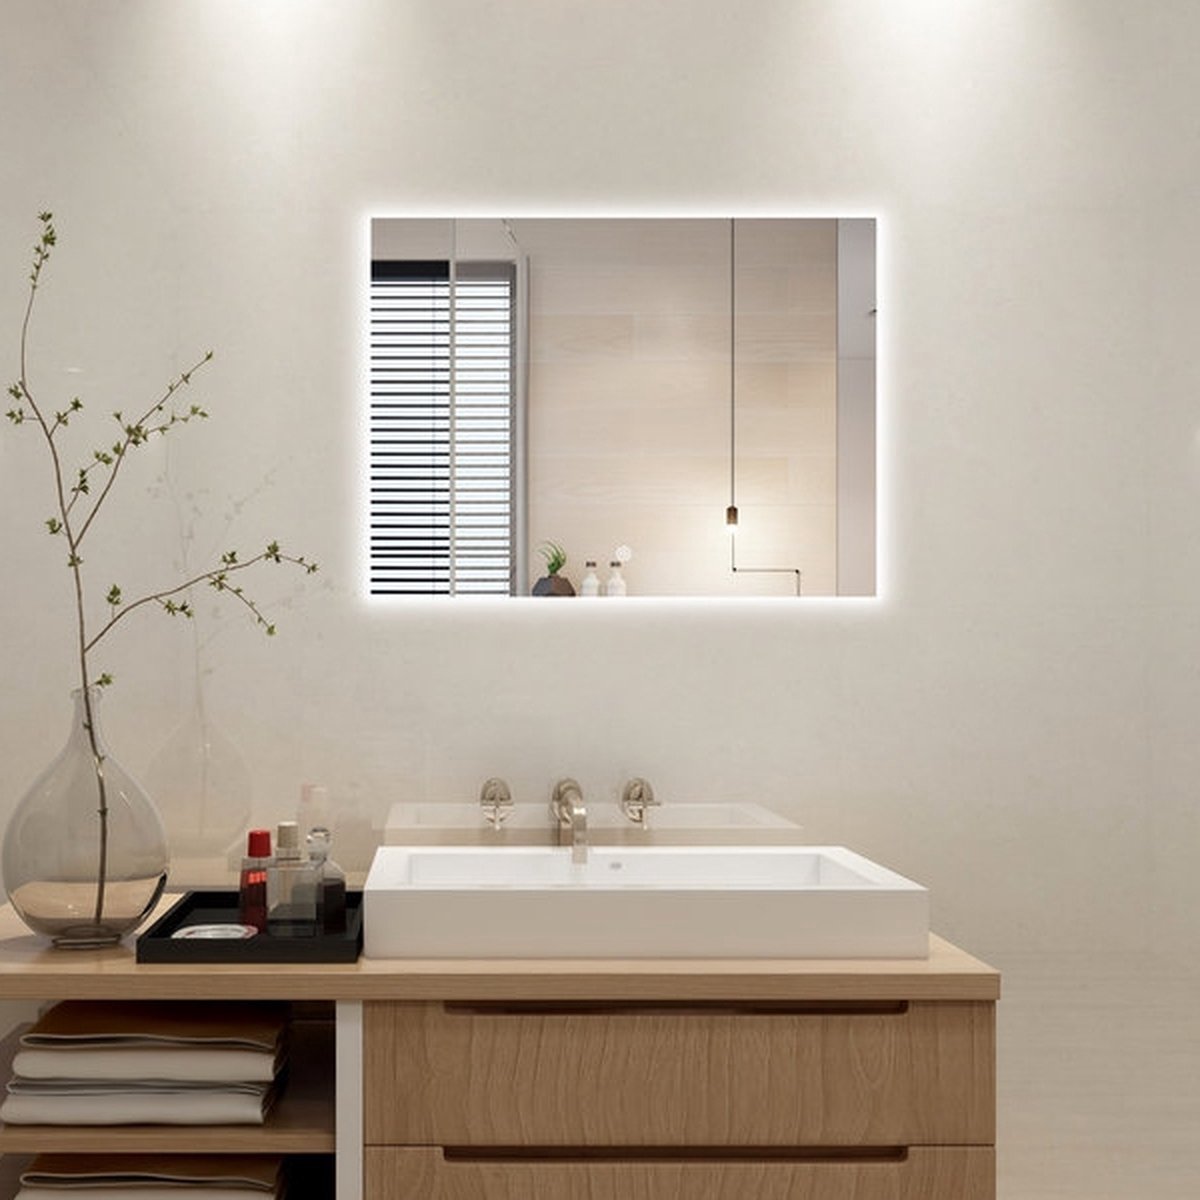 Badkamerspiegel - Badkamerspiegel Met Led Verlichting - Badkamerspiegels - Badkamerspiegel met Verlichting - Anti Condens - 60 x 60 cm